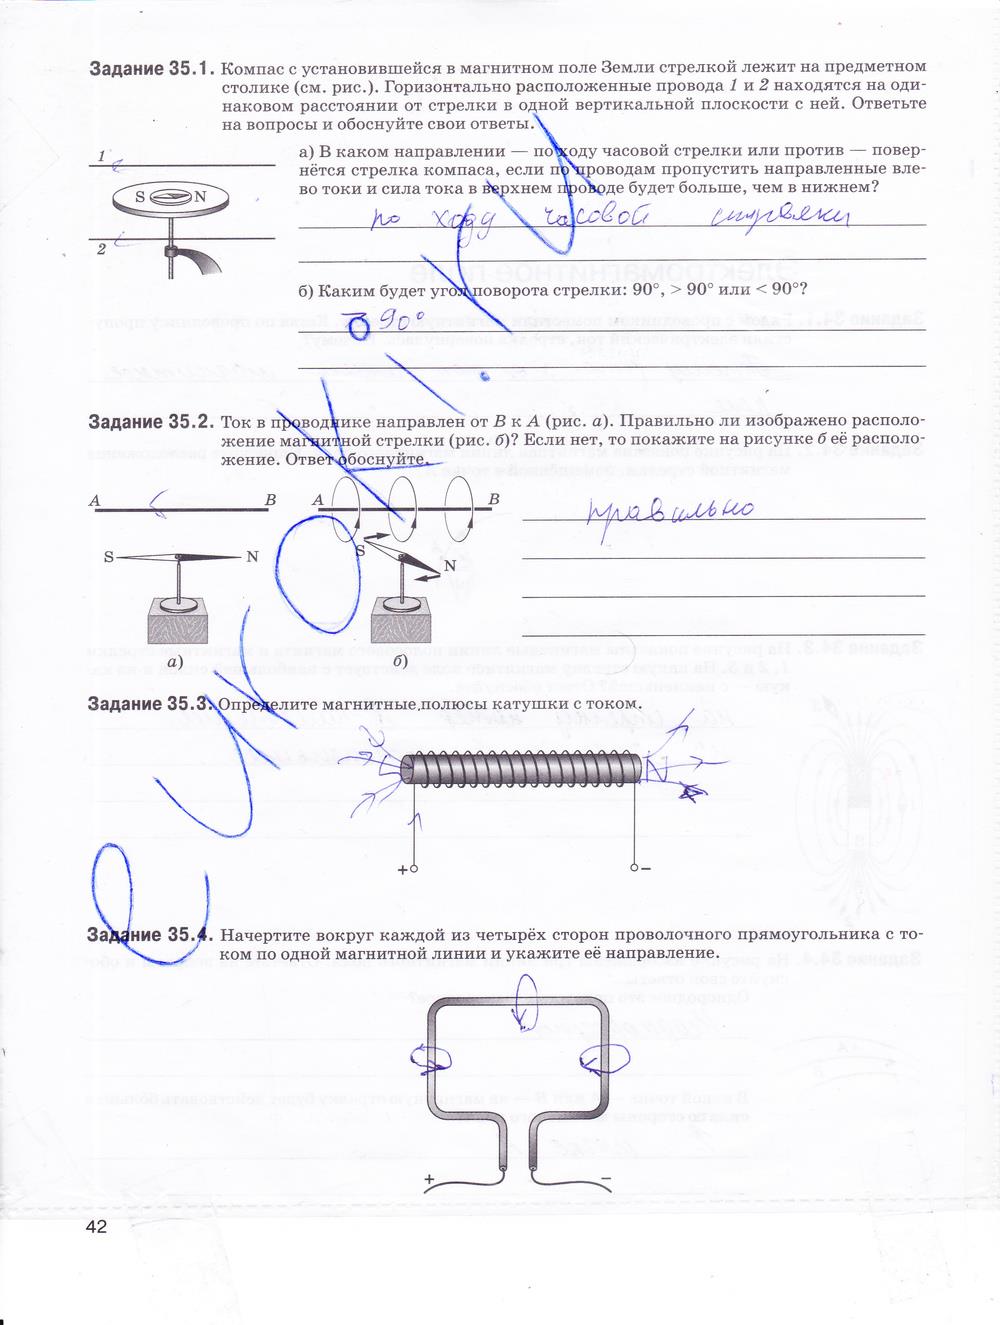 гдз 9 класс рабочая тетрадь страница 42 физика Гутник, Власова